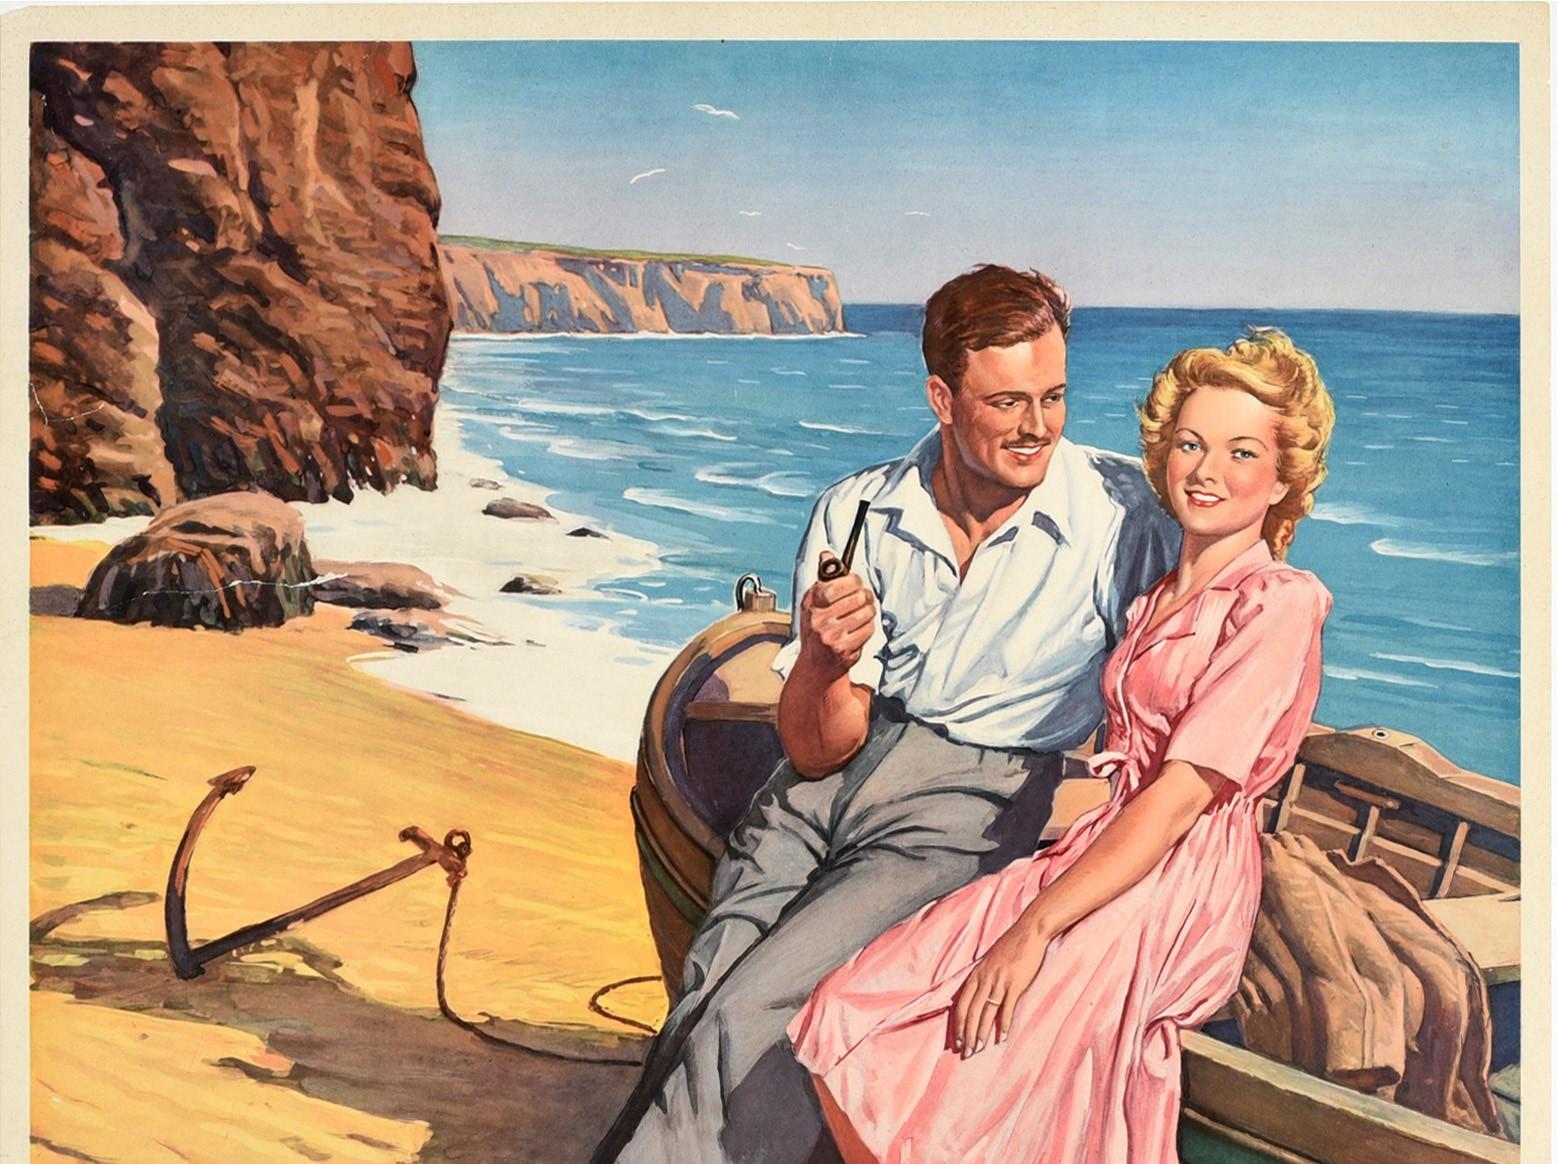 Affiche publicitaire originale d'époque - Vos vacances vaudront votre épargne Investissez dans la Caisse d'épargne - représentant un jeune couple profitant de vacances d'été au bord de la mer avec l'inscription stylisée en bas, la dame souriant au